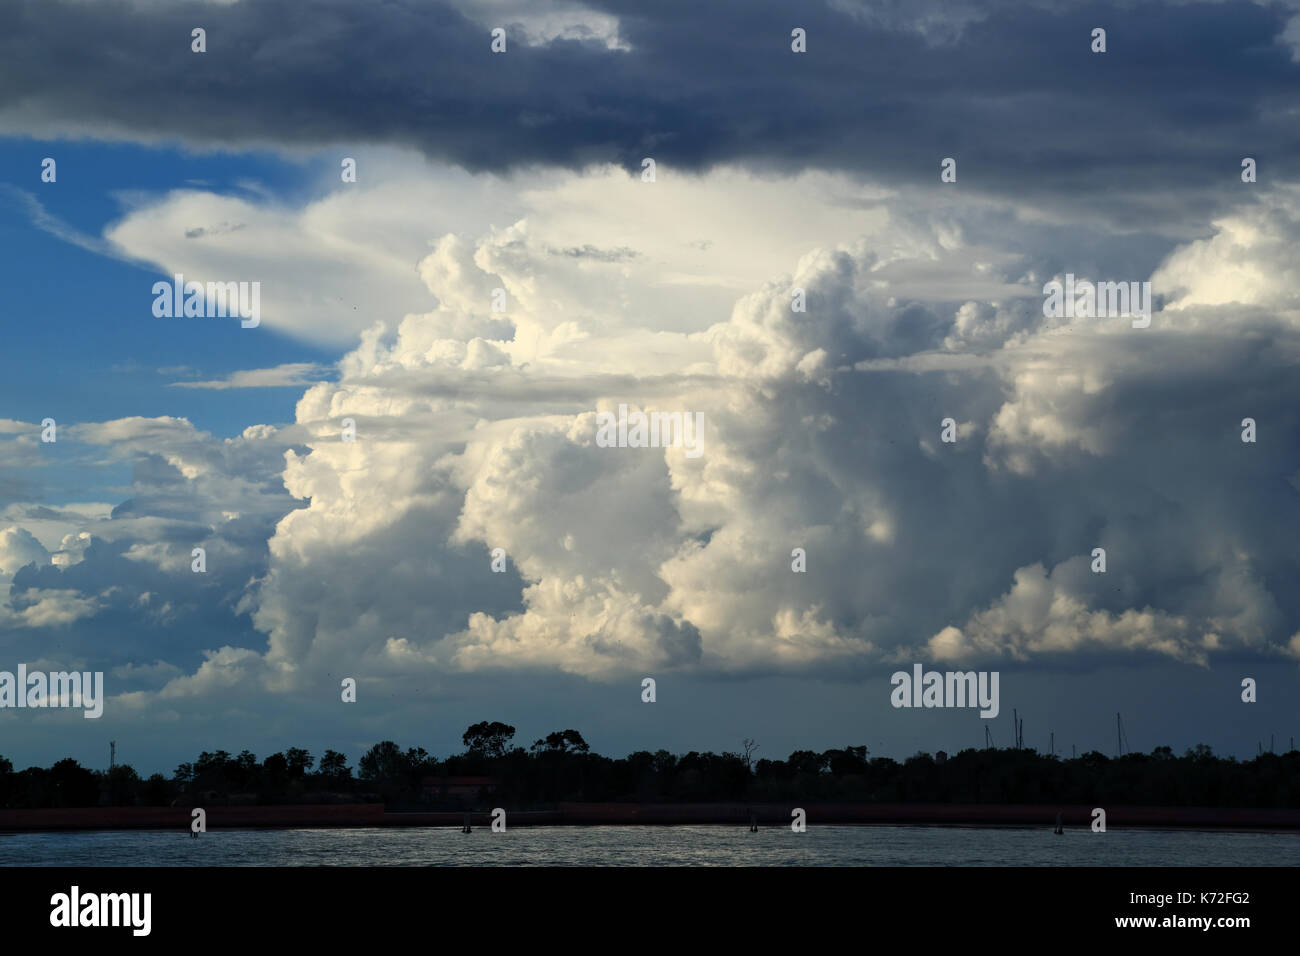 Dramatisch Gewitter Wolkenbildung Stockfoto